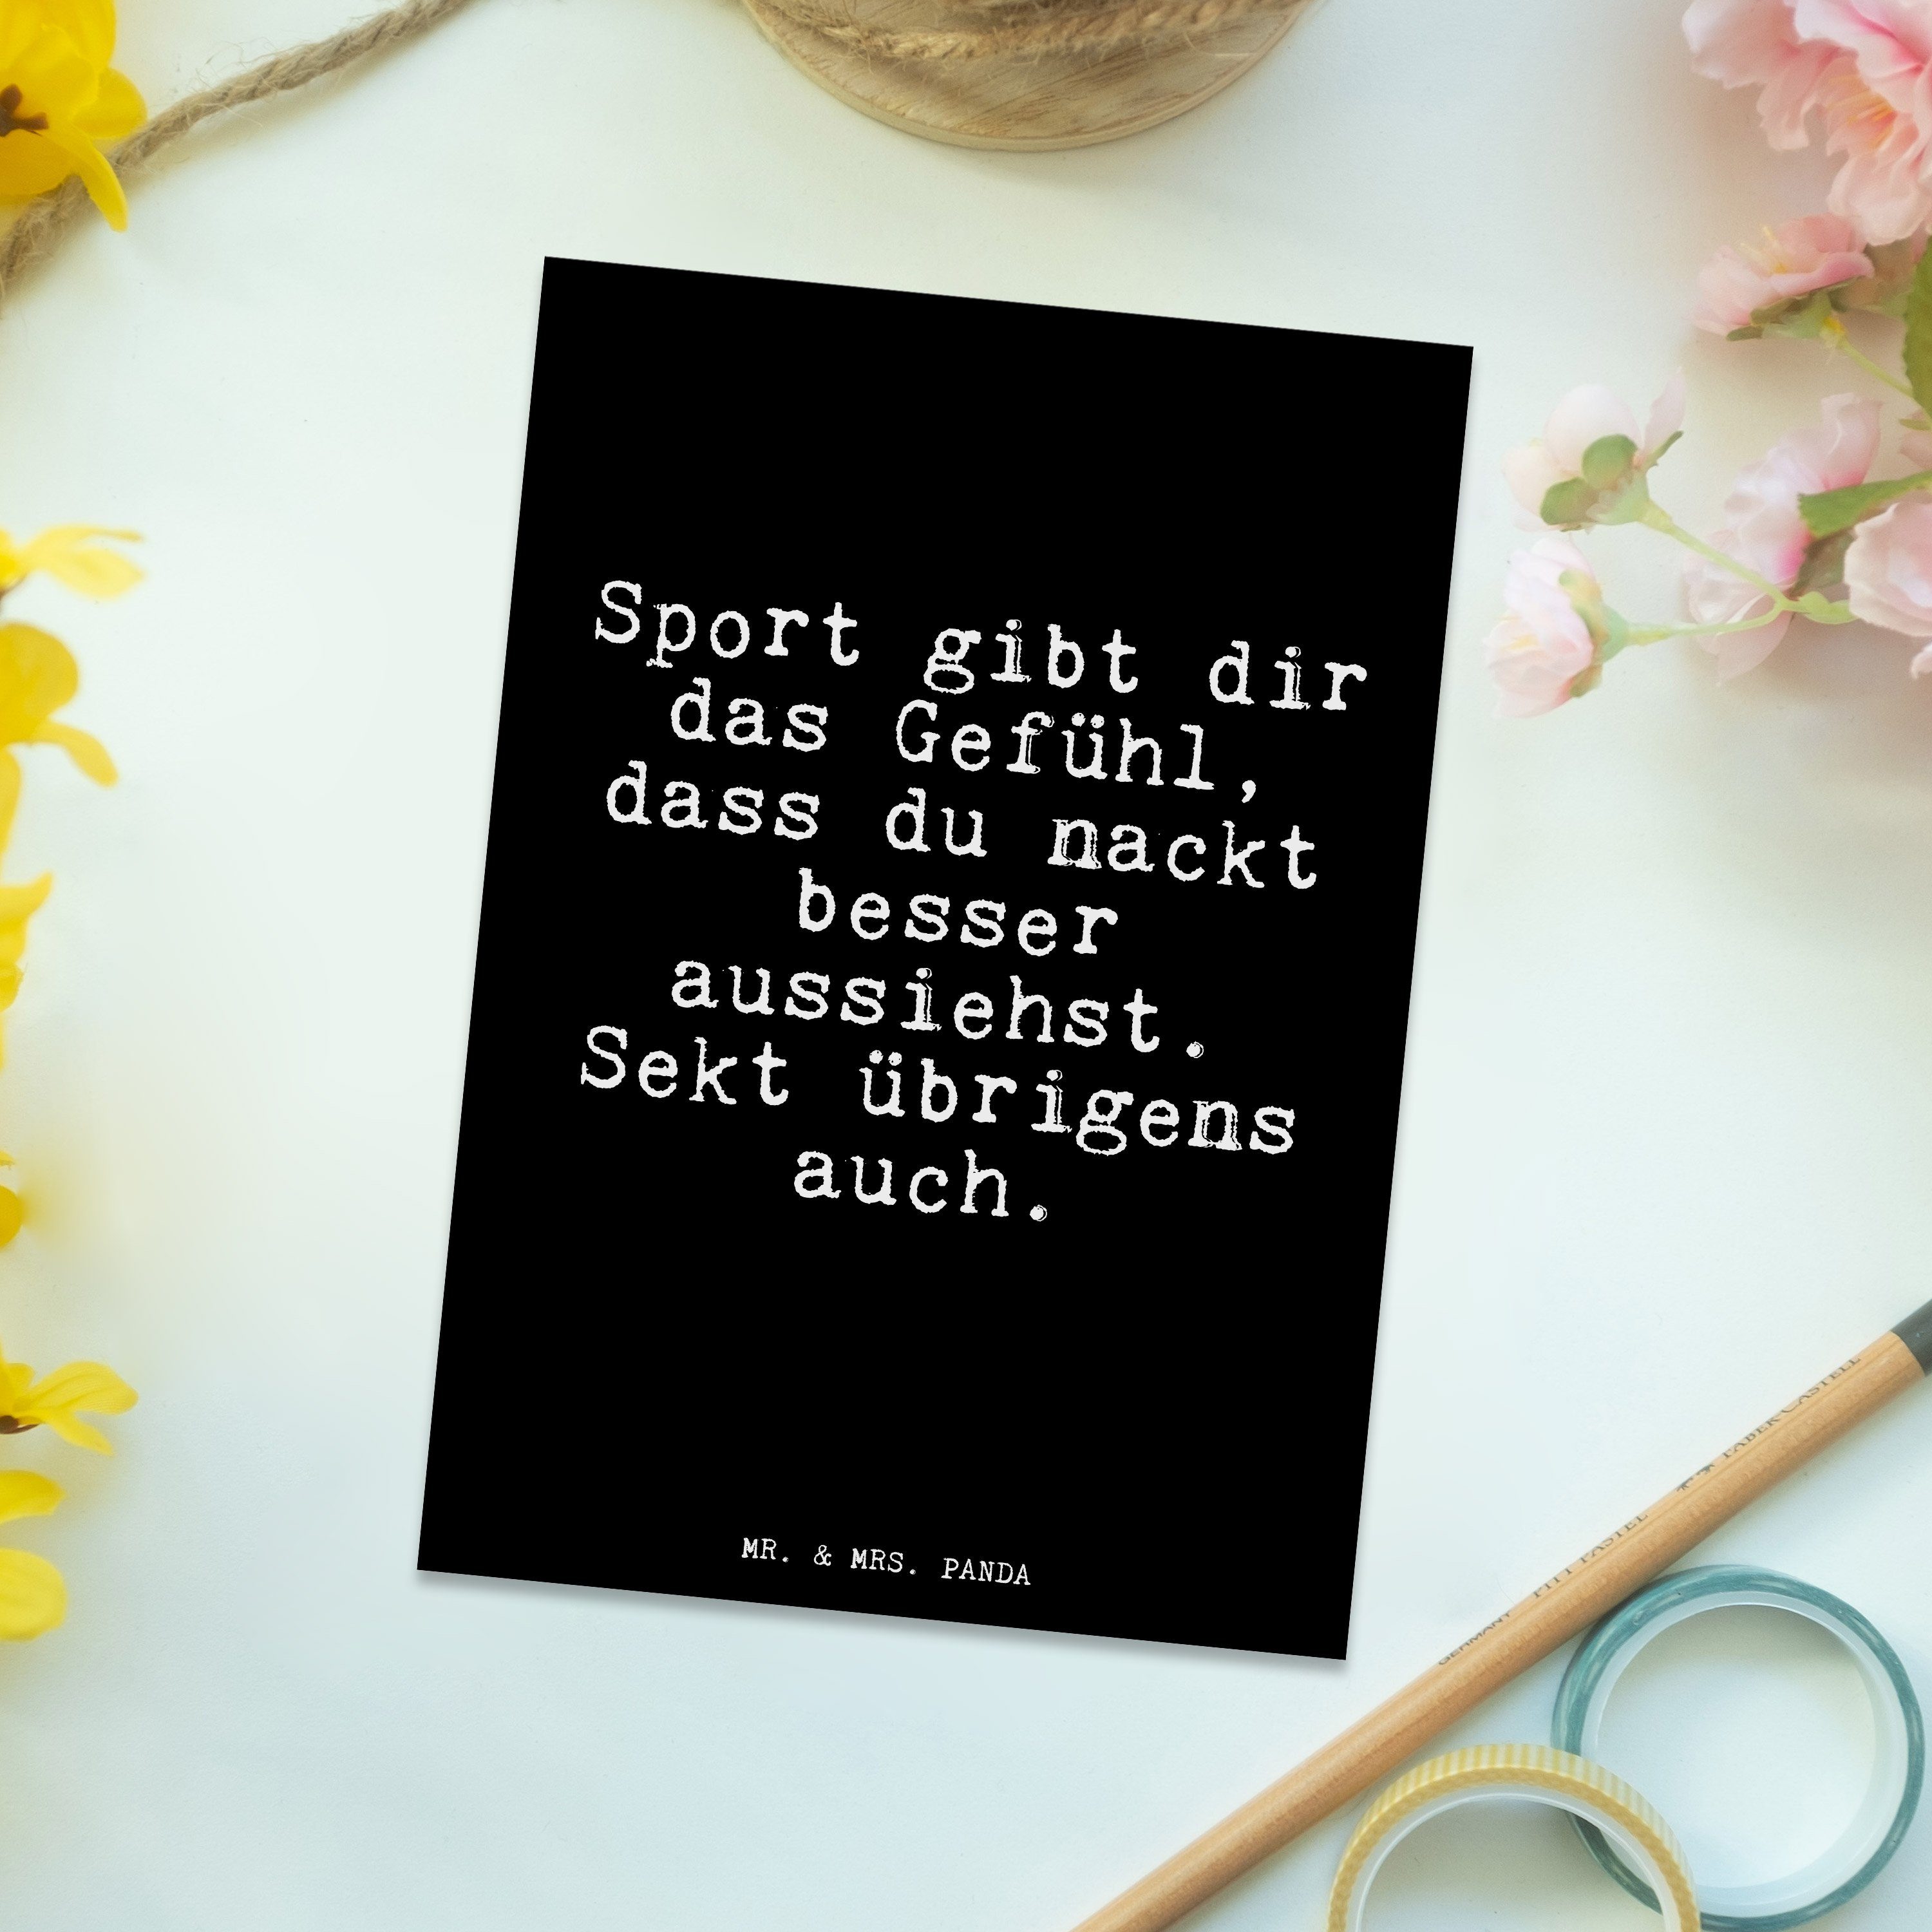 Mr. & Mrs. dir - Geschenk, Schwarz gibt Panda Postkarte - Spruch, Sport Geburtstagskarte das